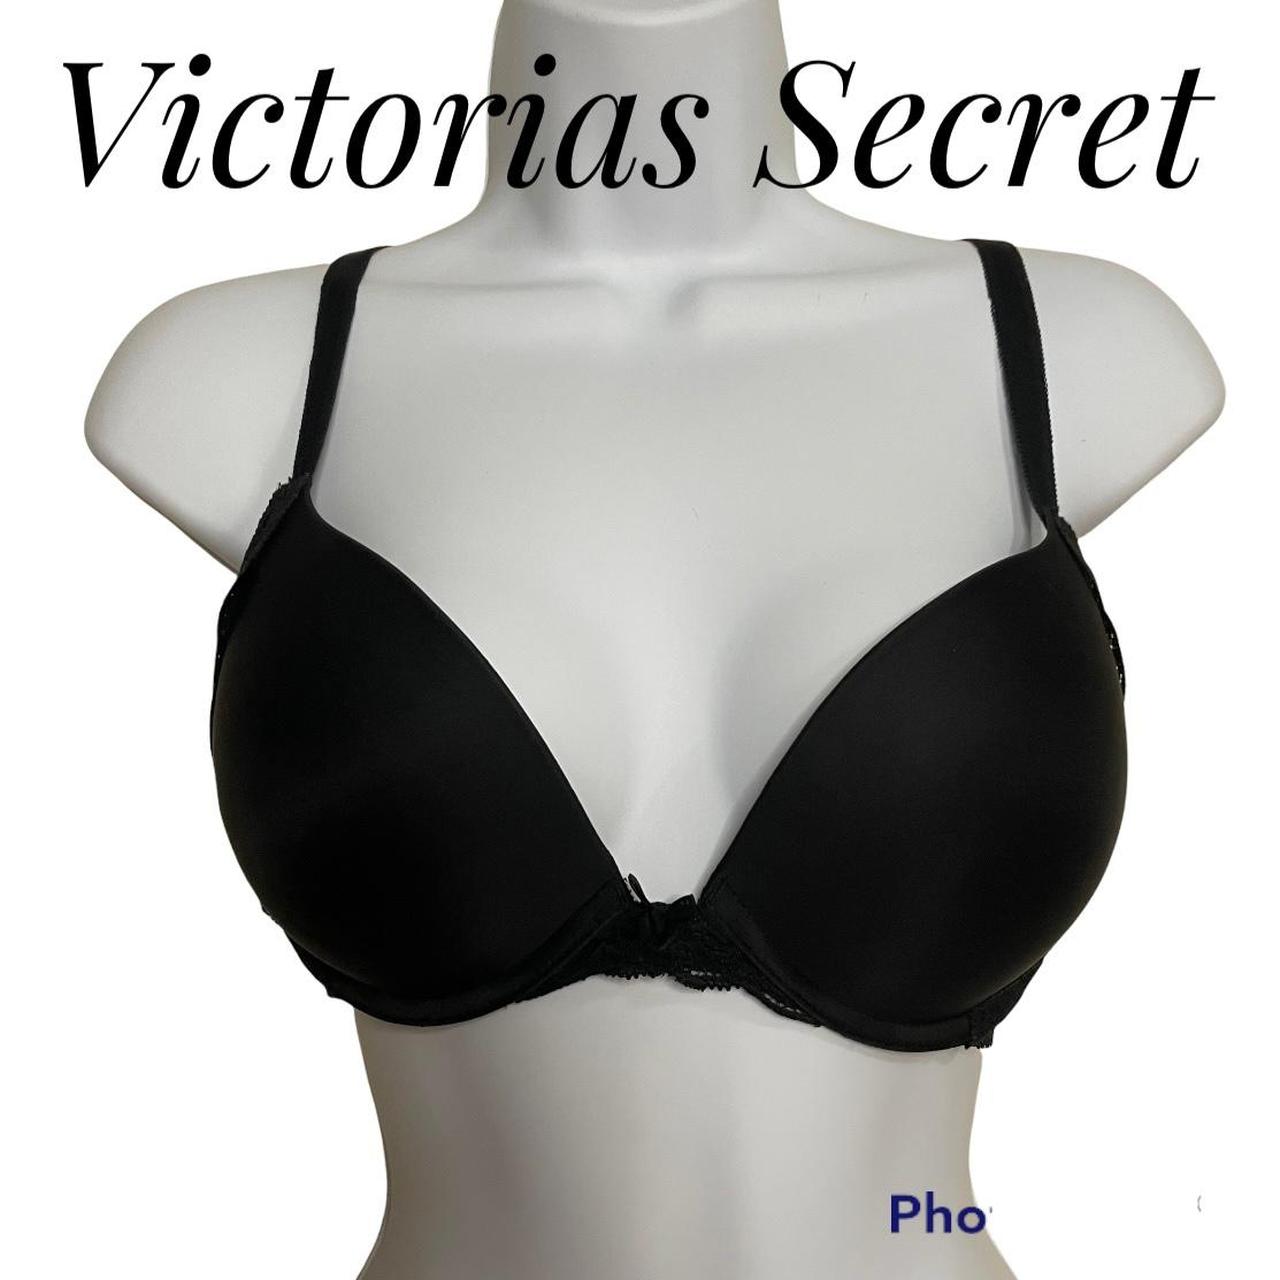 Victorias Secret 34D Bra Push Up Black Floral Lace - Depop